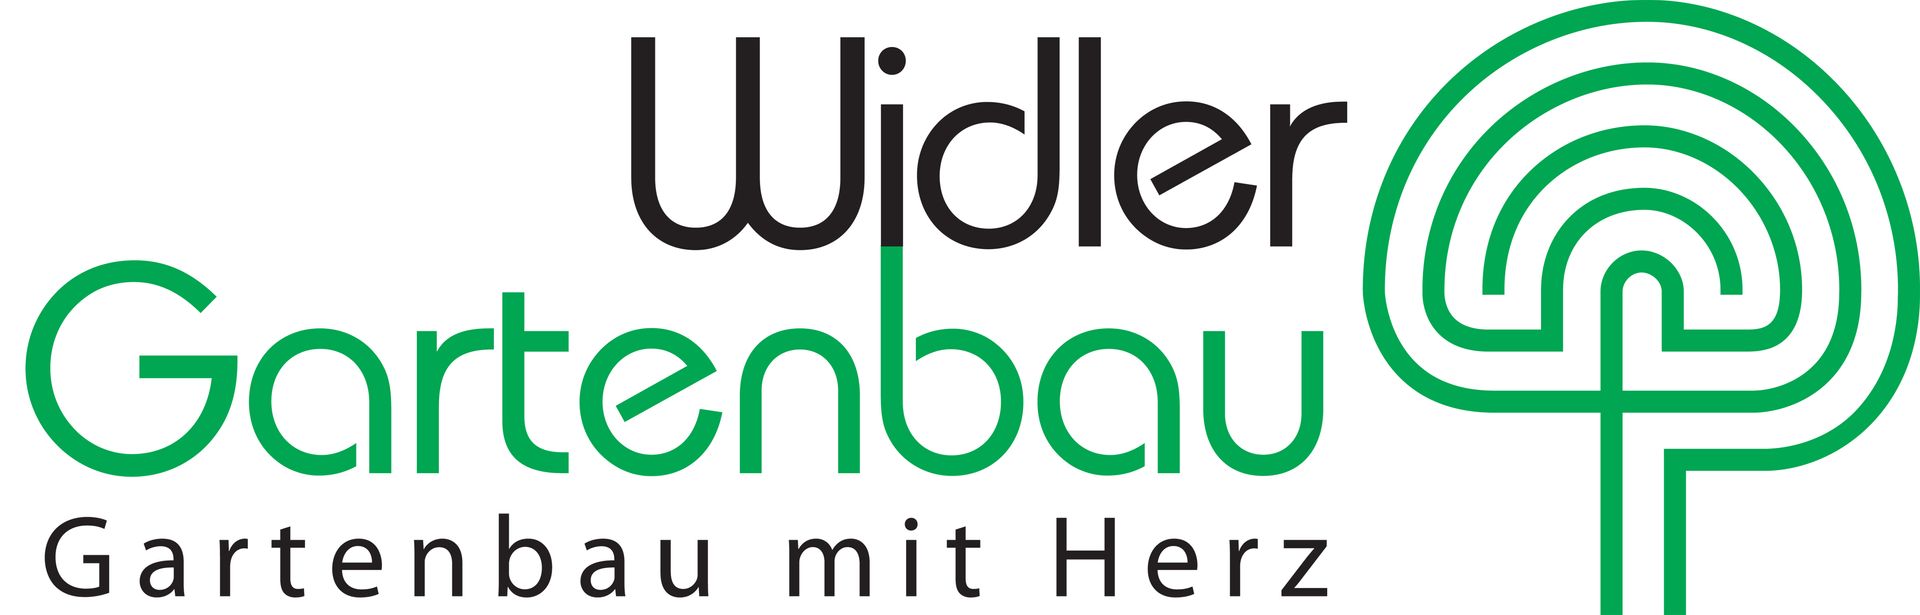 Gartenunterhalt - Horgen - Widler Gartenbau GmbH